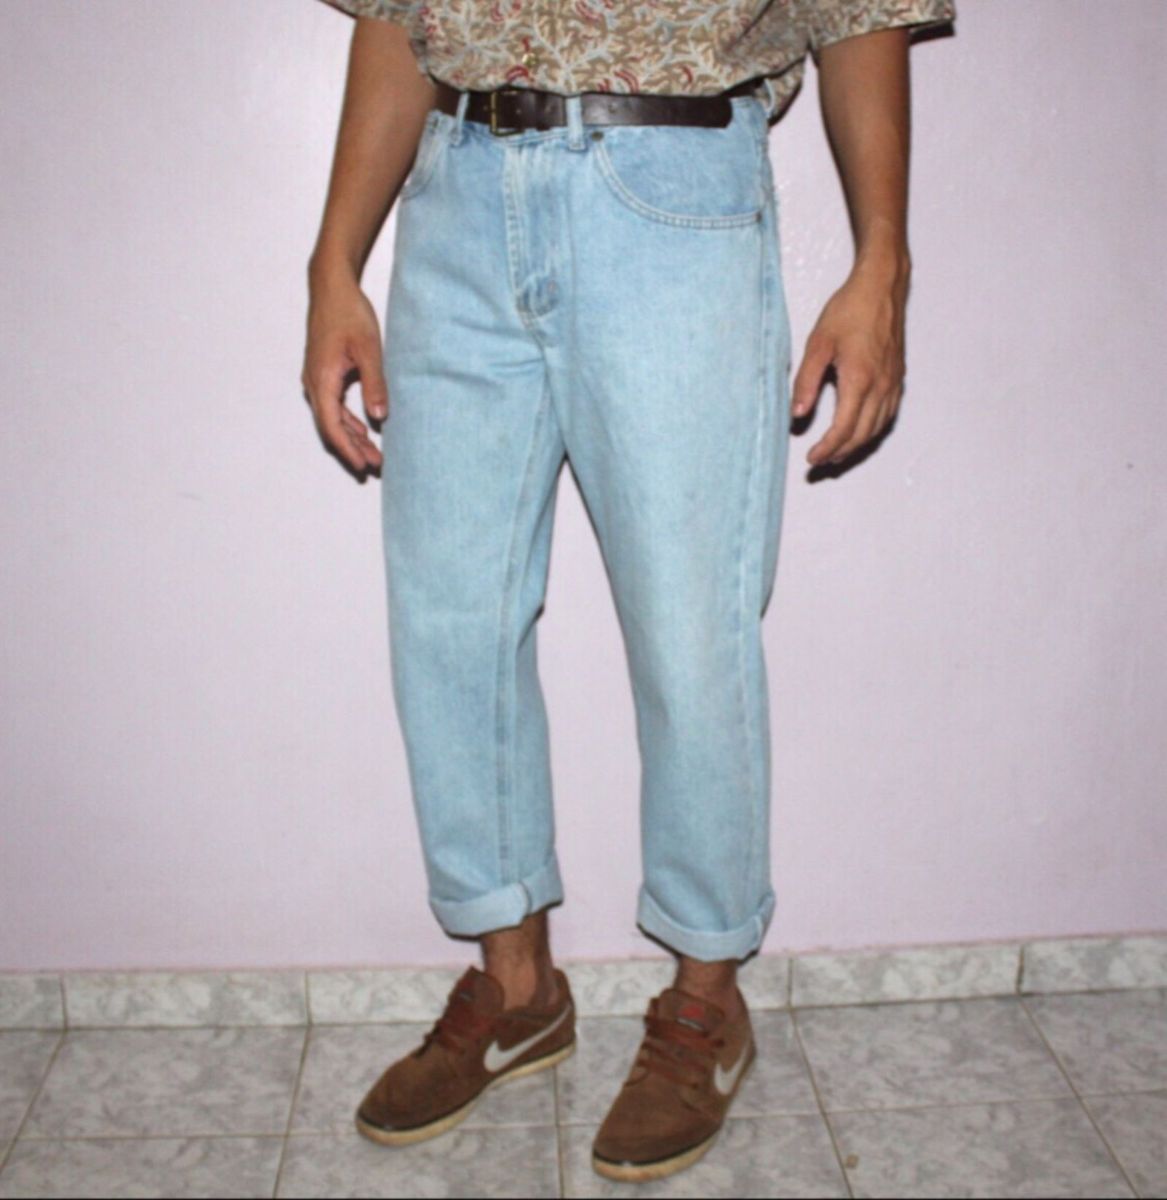 jeans retro masculino